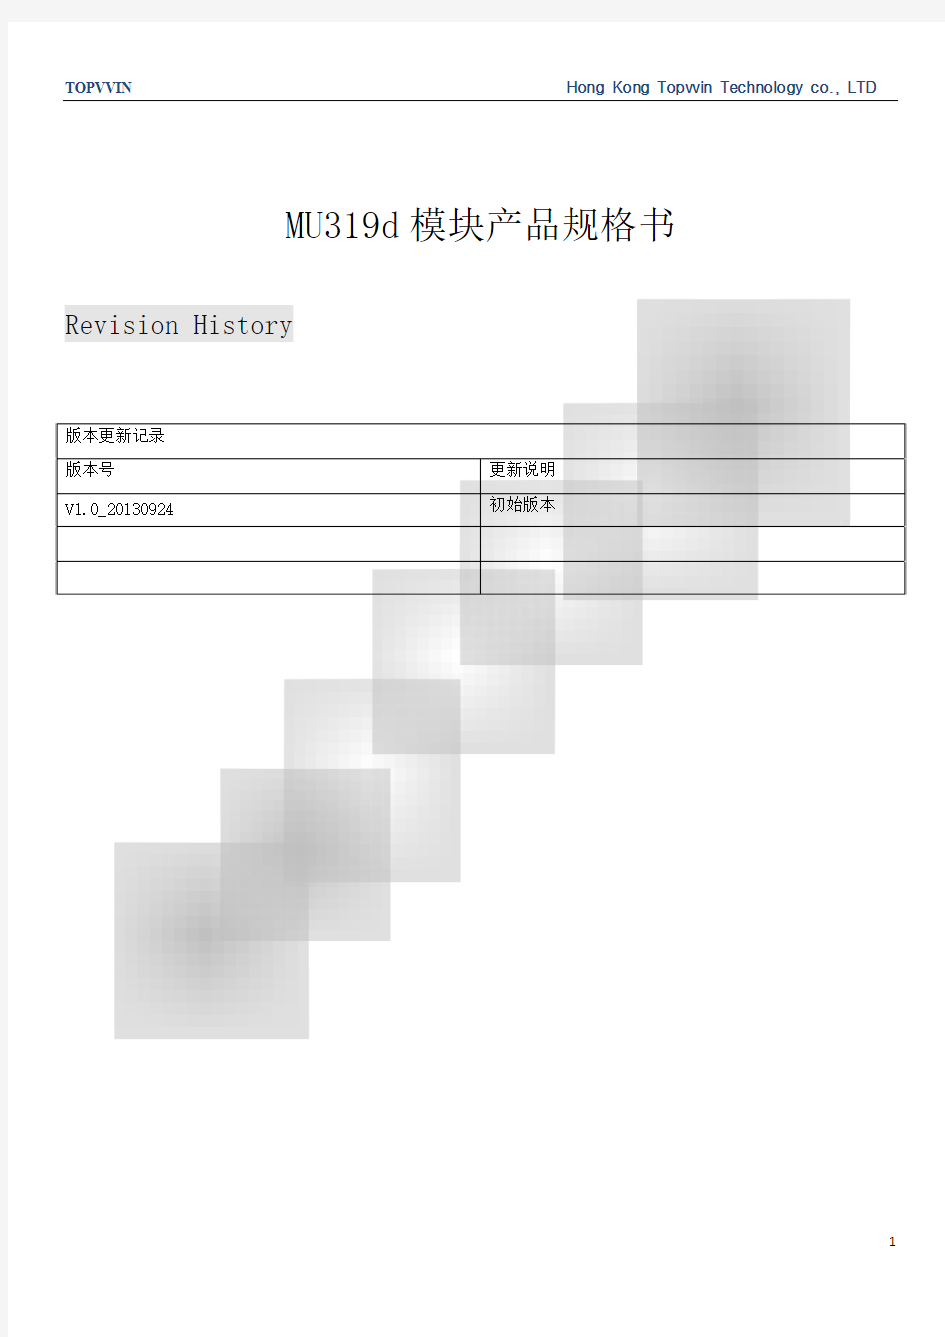 MU319d模块产品规格书V1.0_20130924